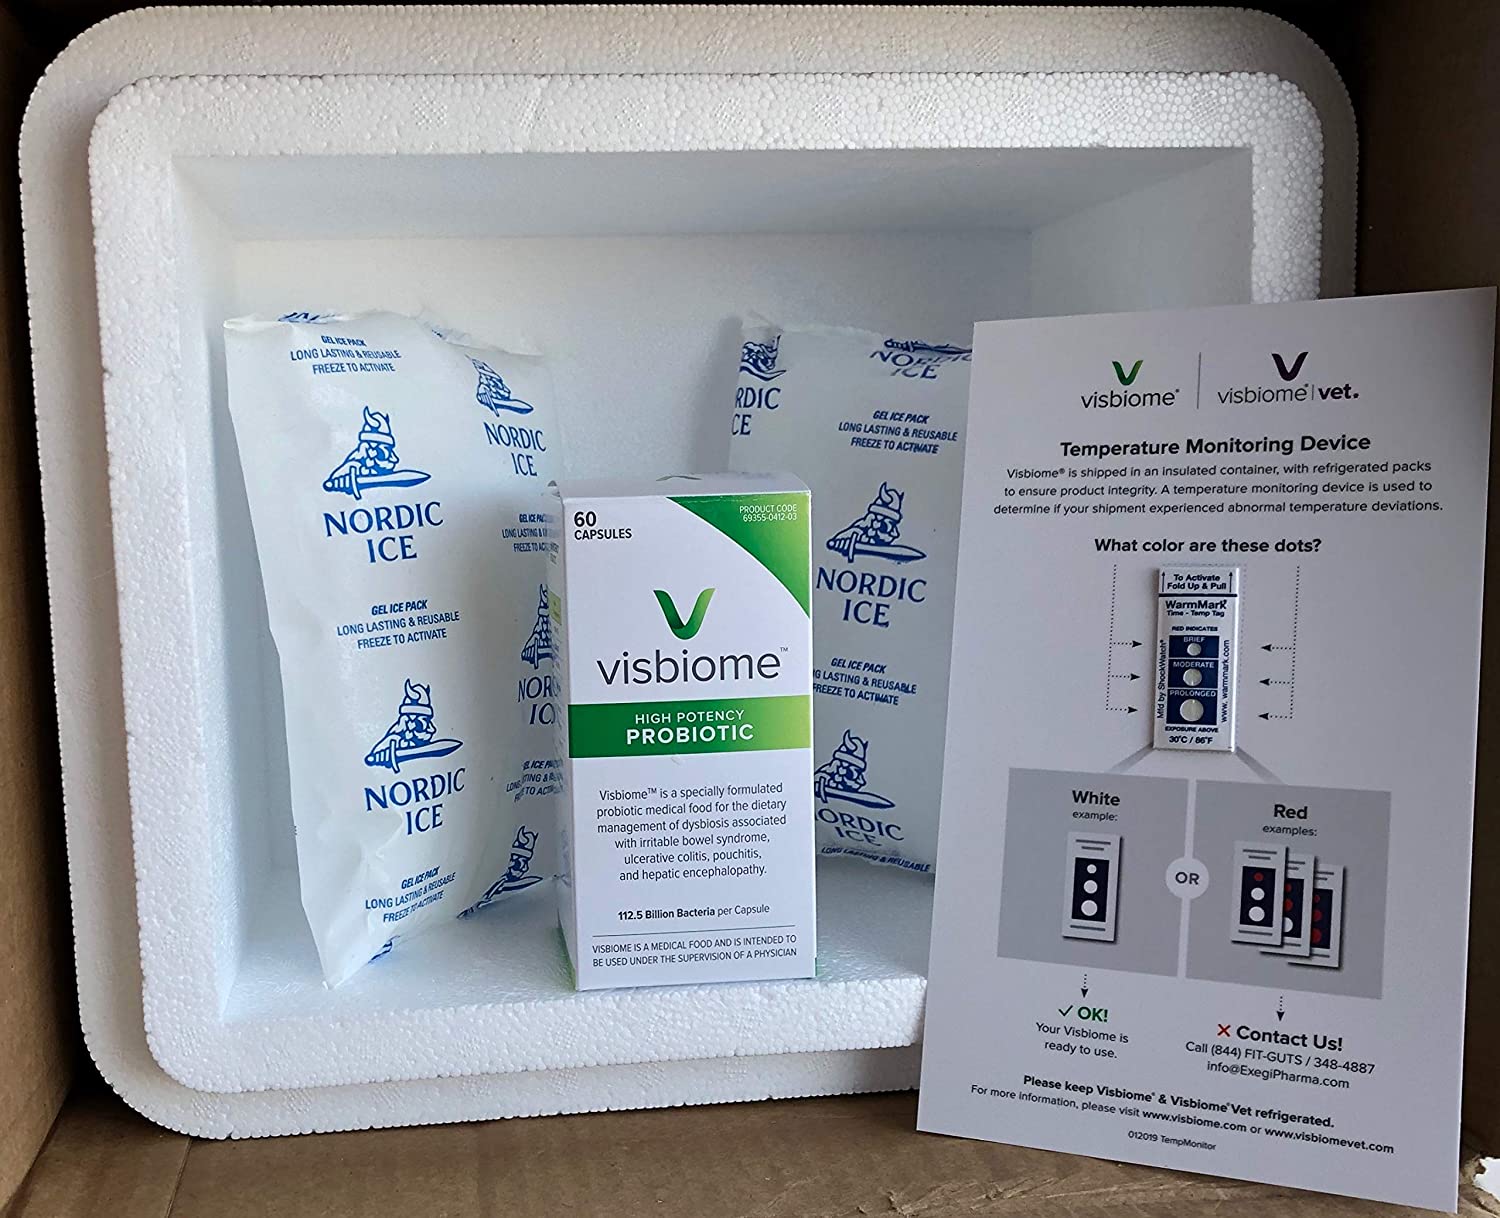 VSL#3 Probiotic or Visbiome